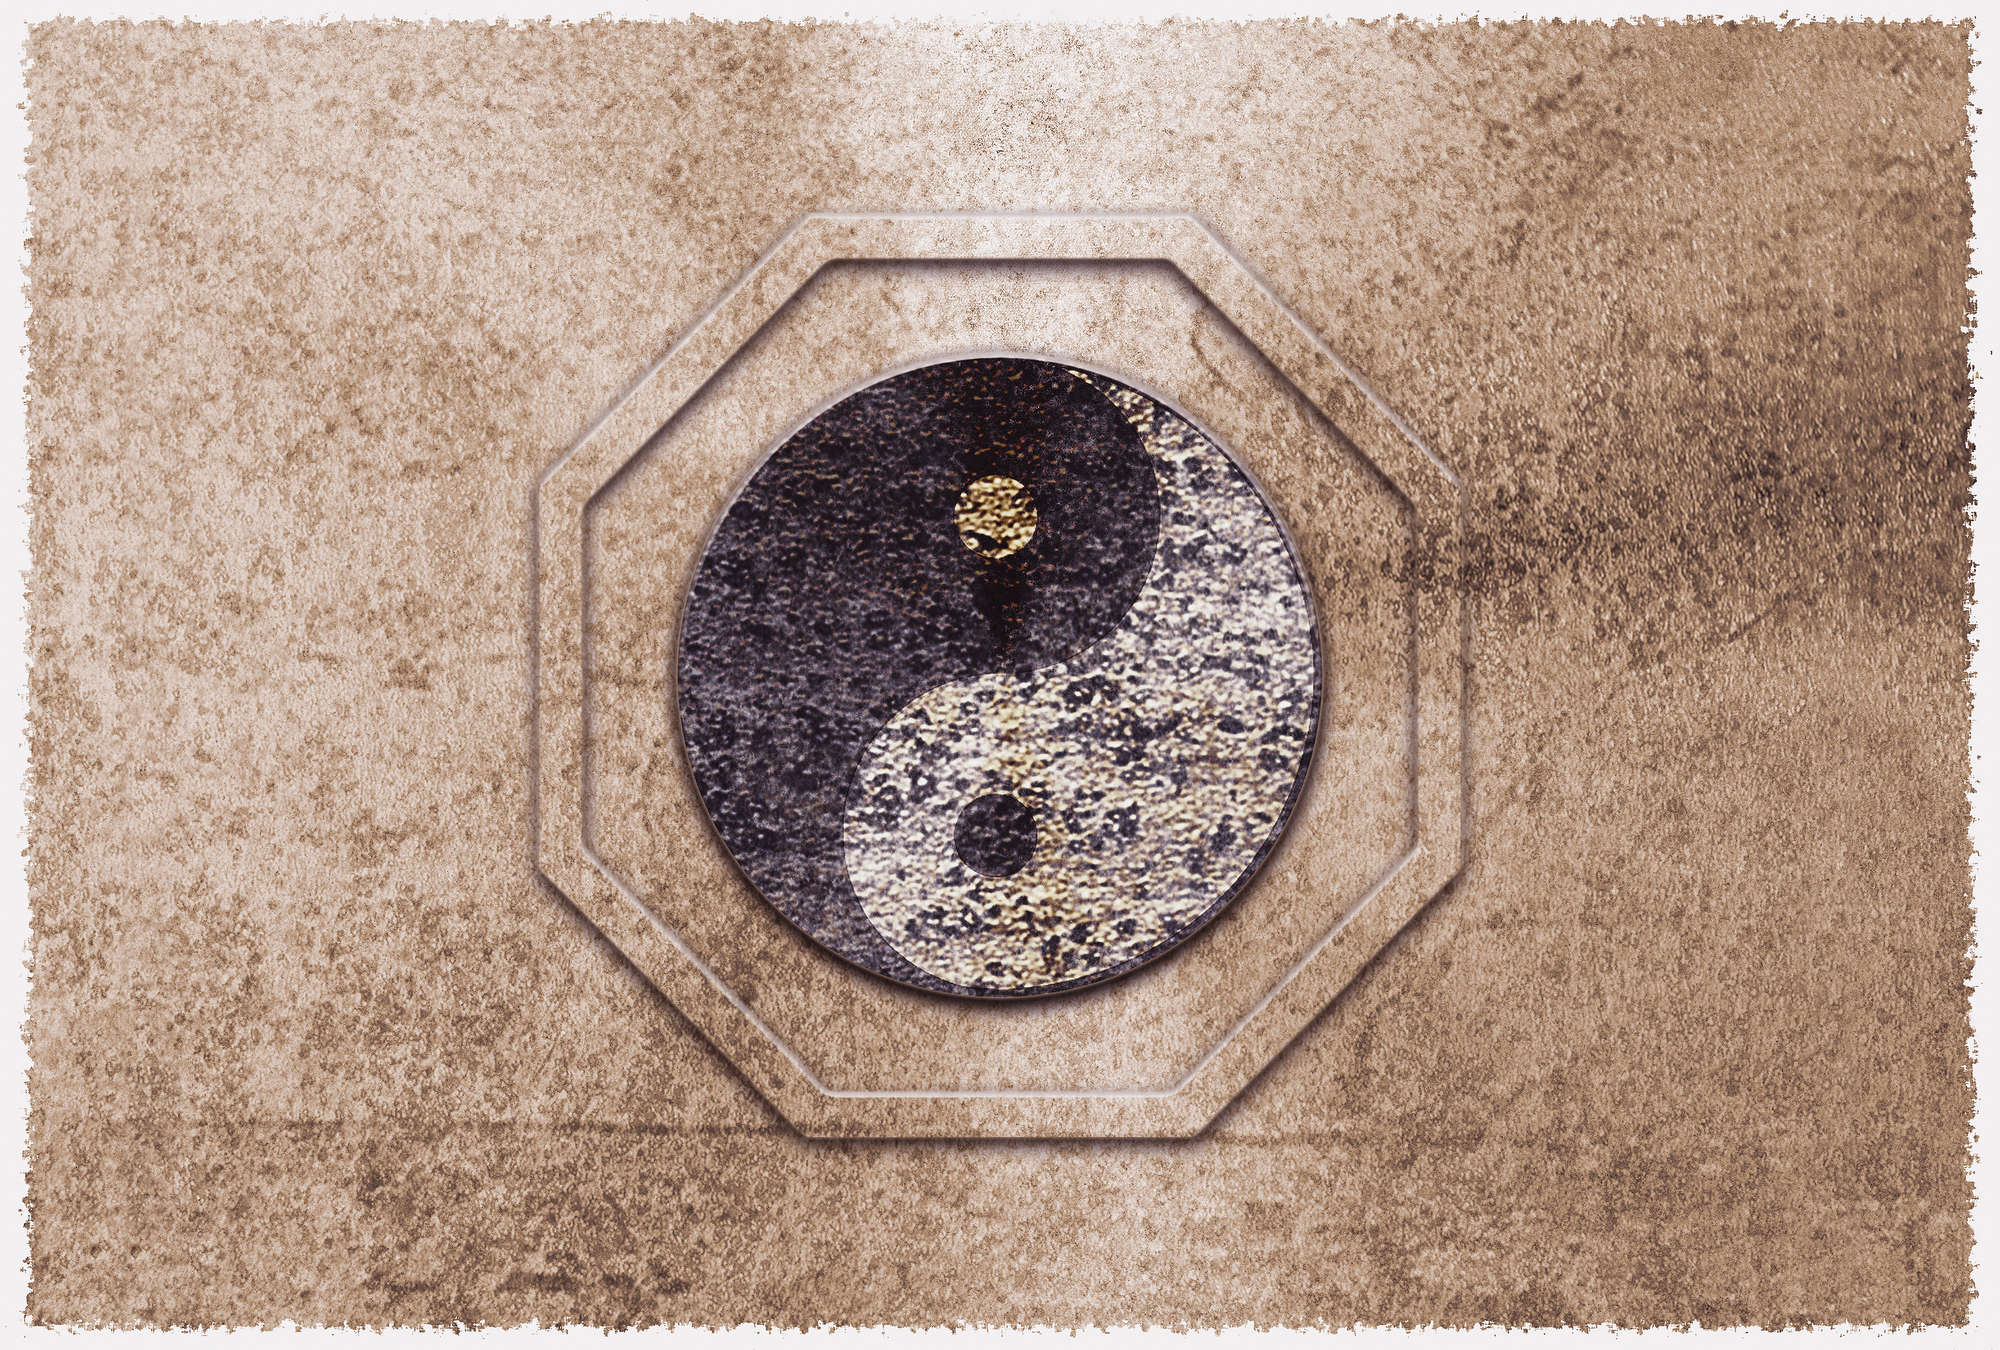             Papier peint Yin&Yang, symbole d'harmonie asiatique - marron, noir, blanc
        